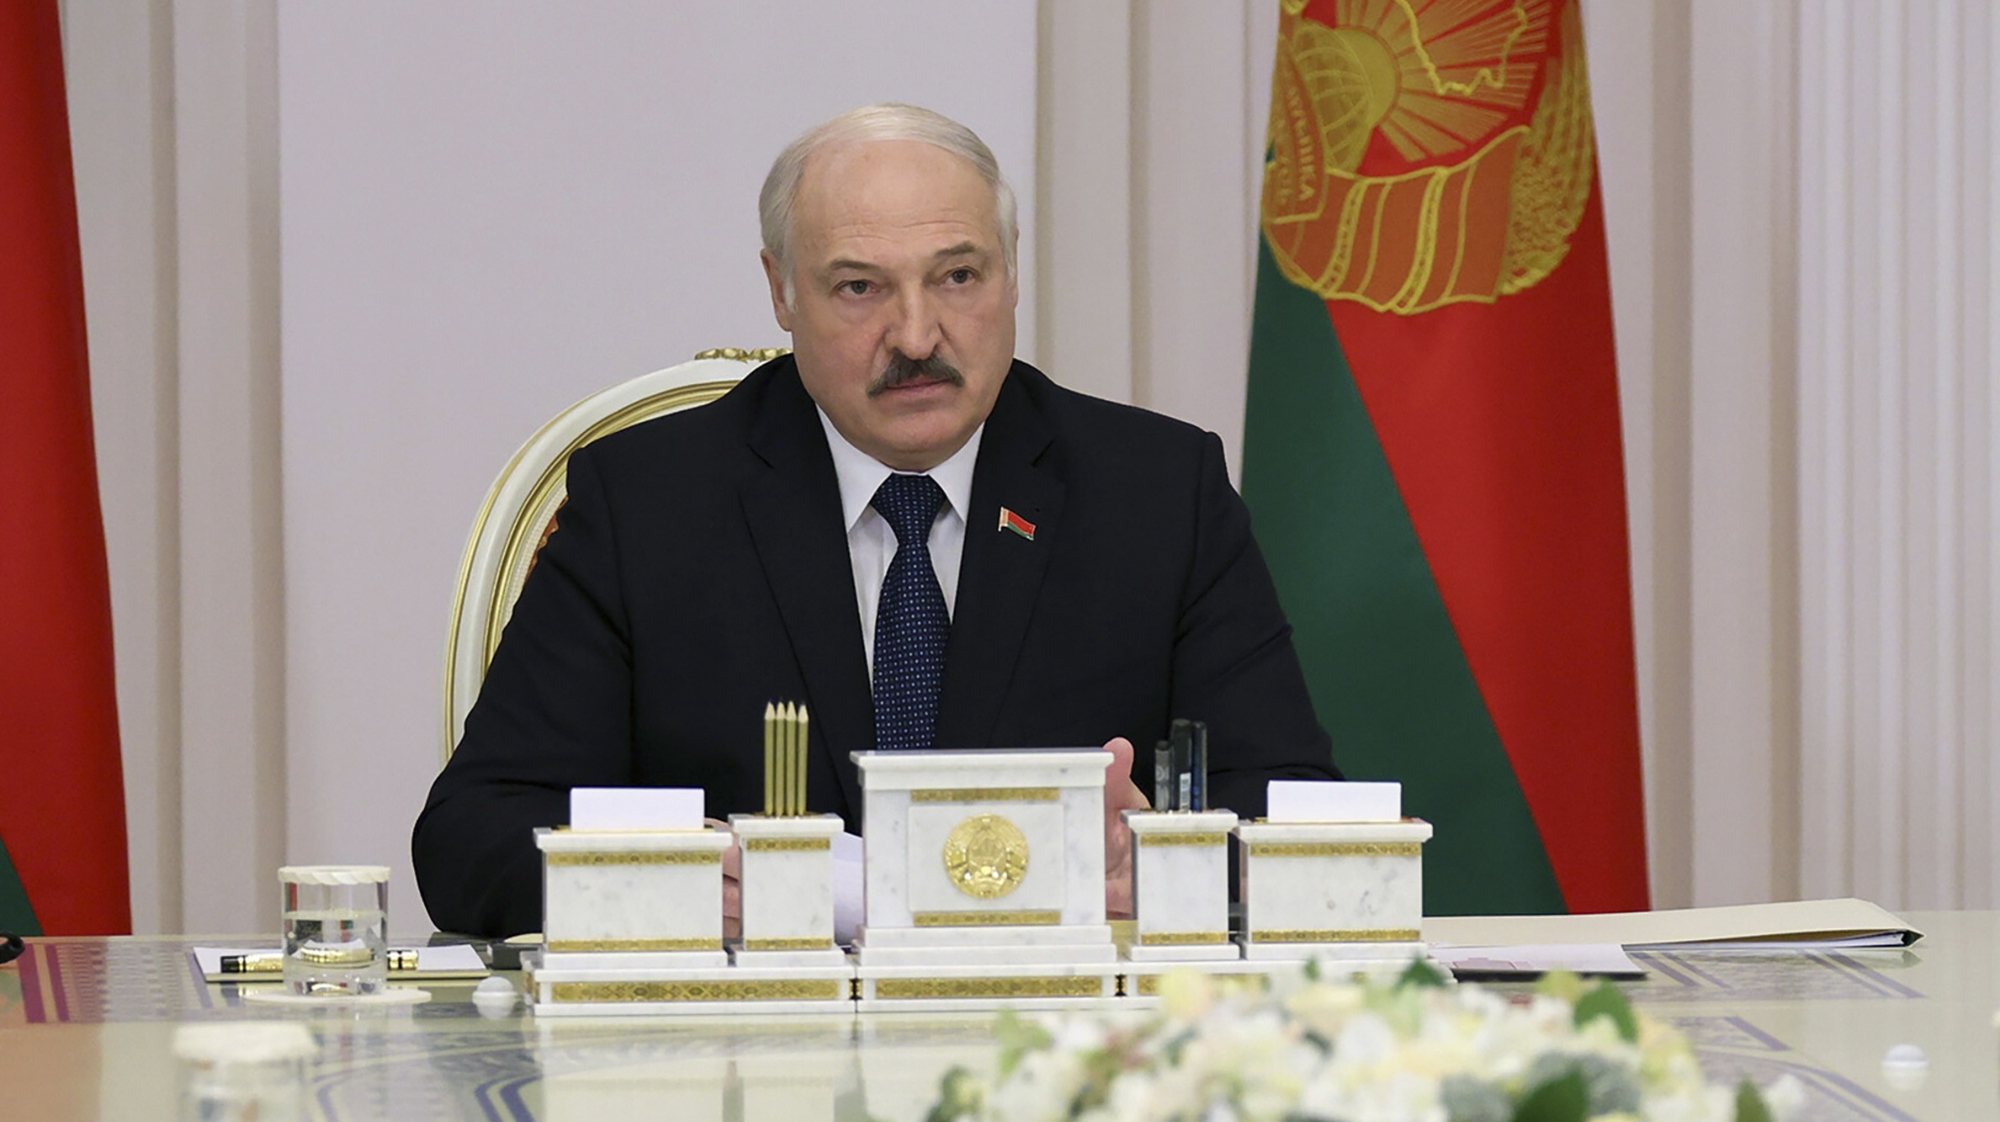 Presidente bielorrusso Aleksandr Lukashenko